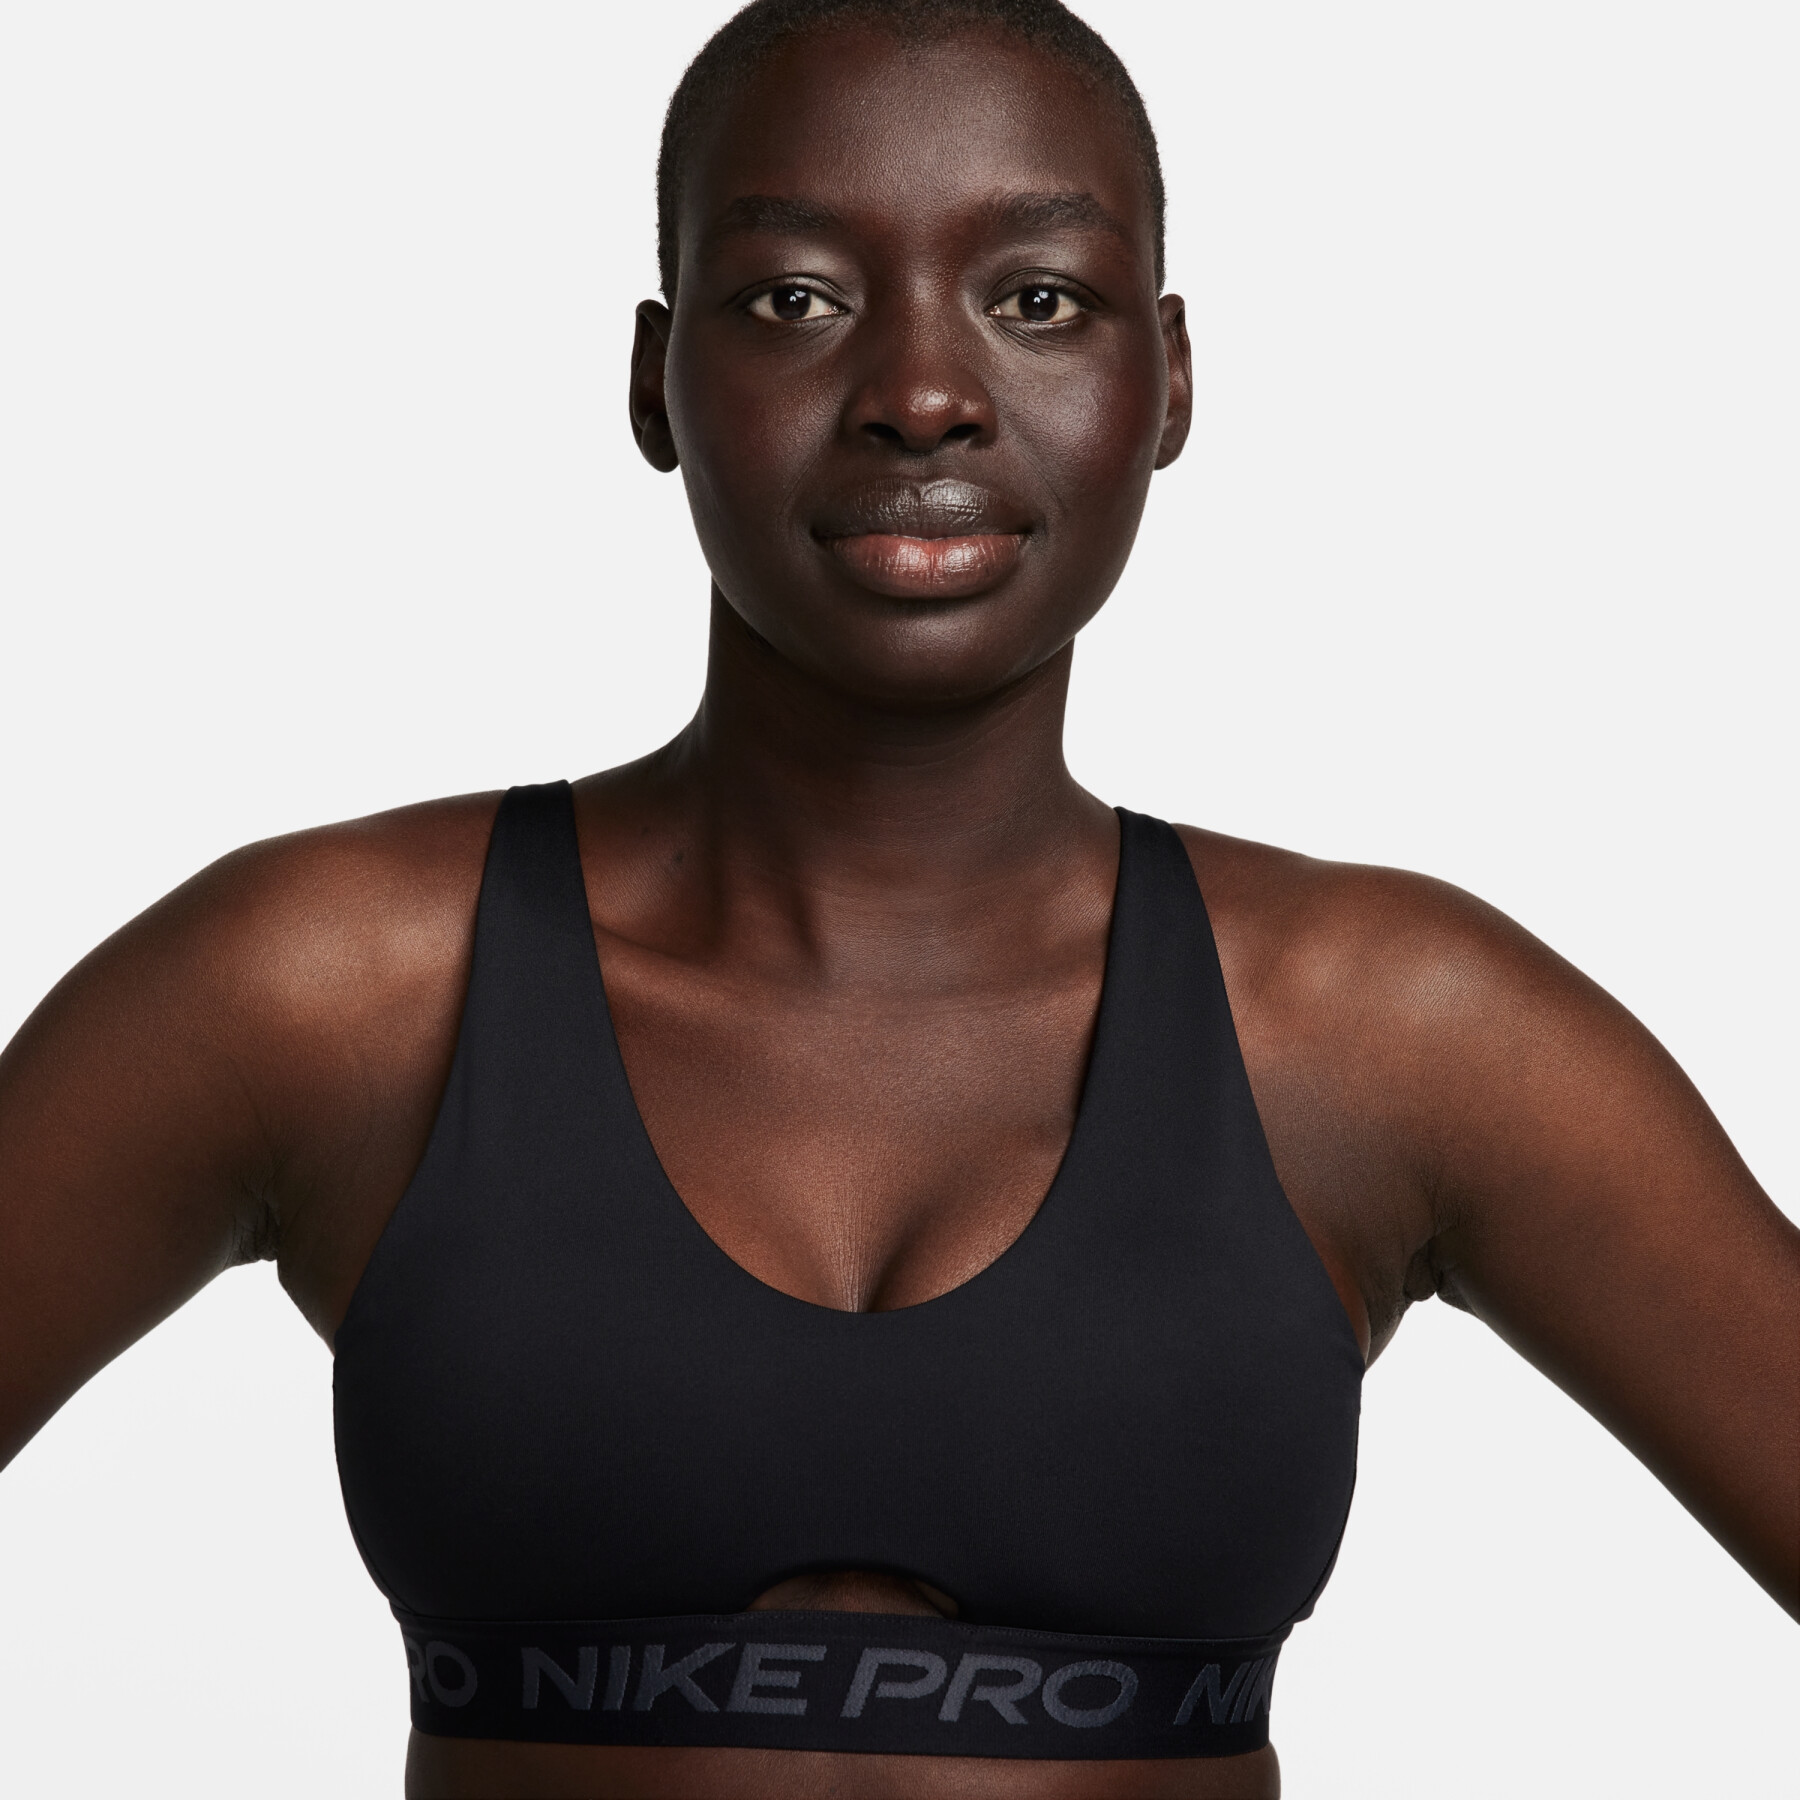 Women's bra Nike Pro Indy Plunge